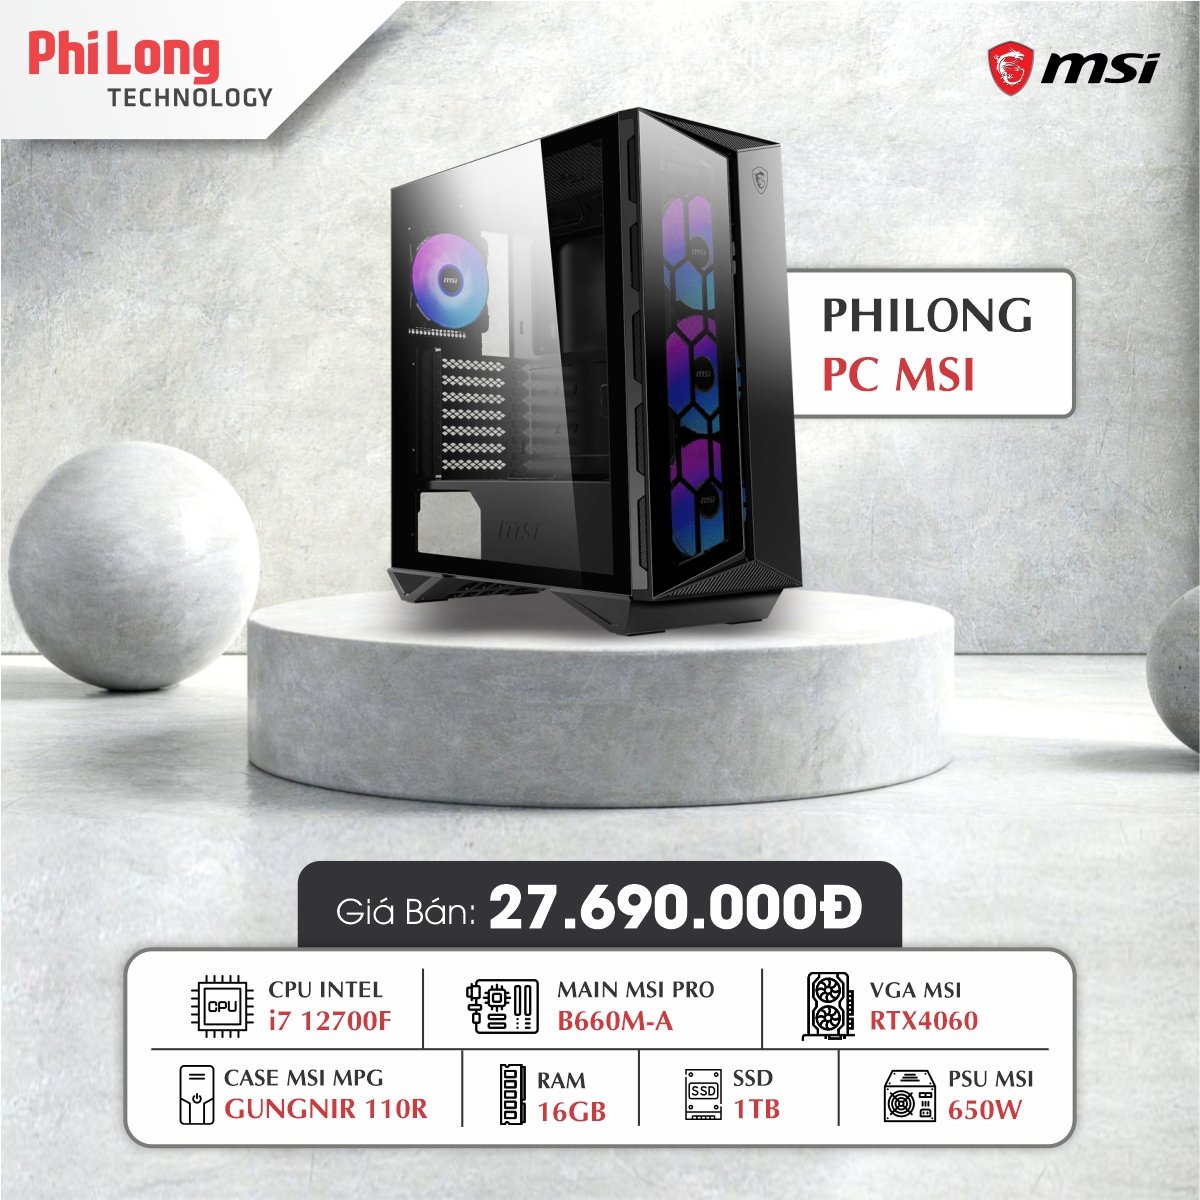 PC PHI LONG GM4060 (I7 12700F, B660M-A, RAM 16GB, SSD 1TB, RTX 4060, PSU 650W)